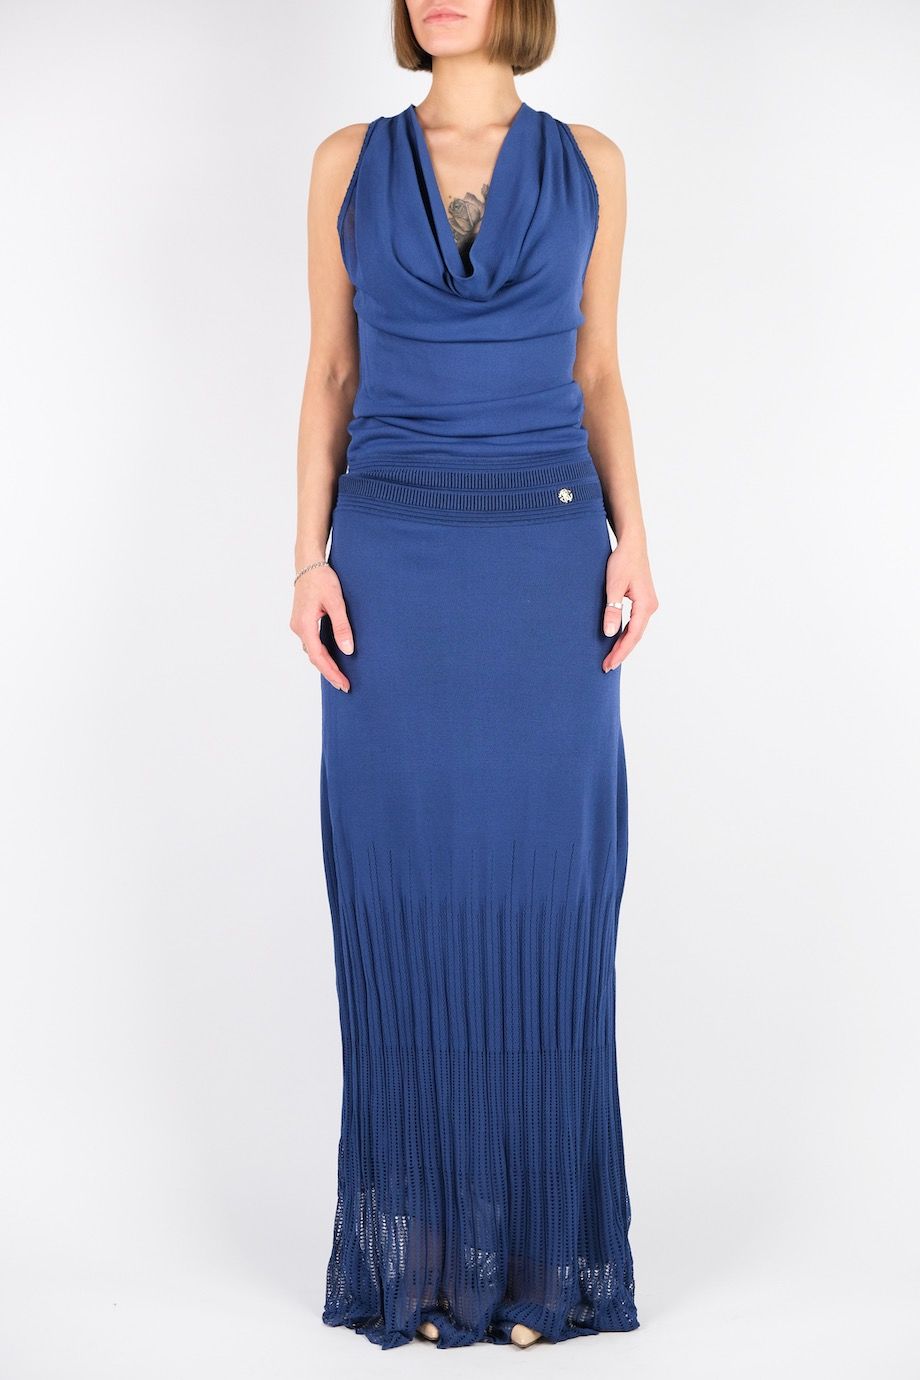 image 1 Трикотажное платье в пол синего цвета без рукавов